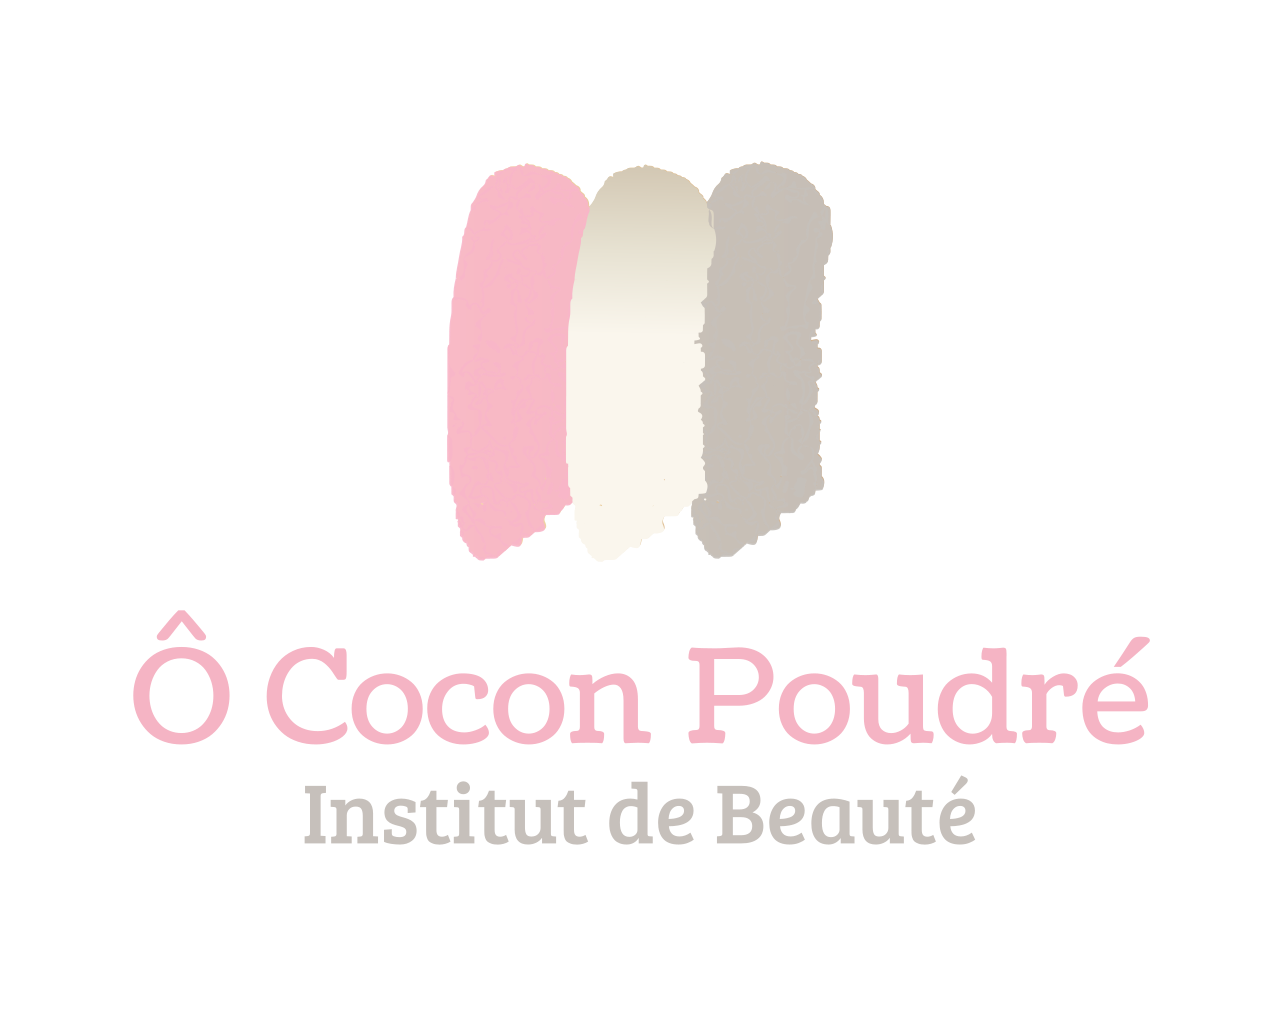 O Cocon Poudré